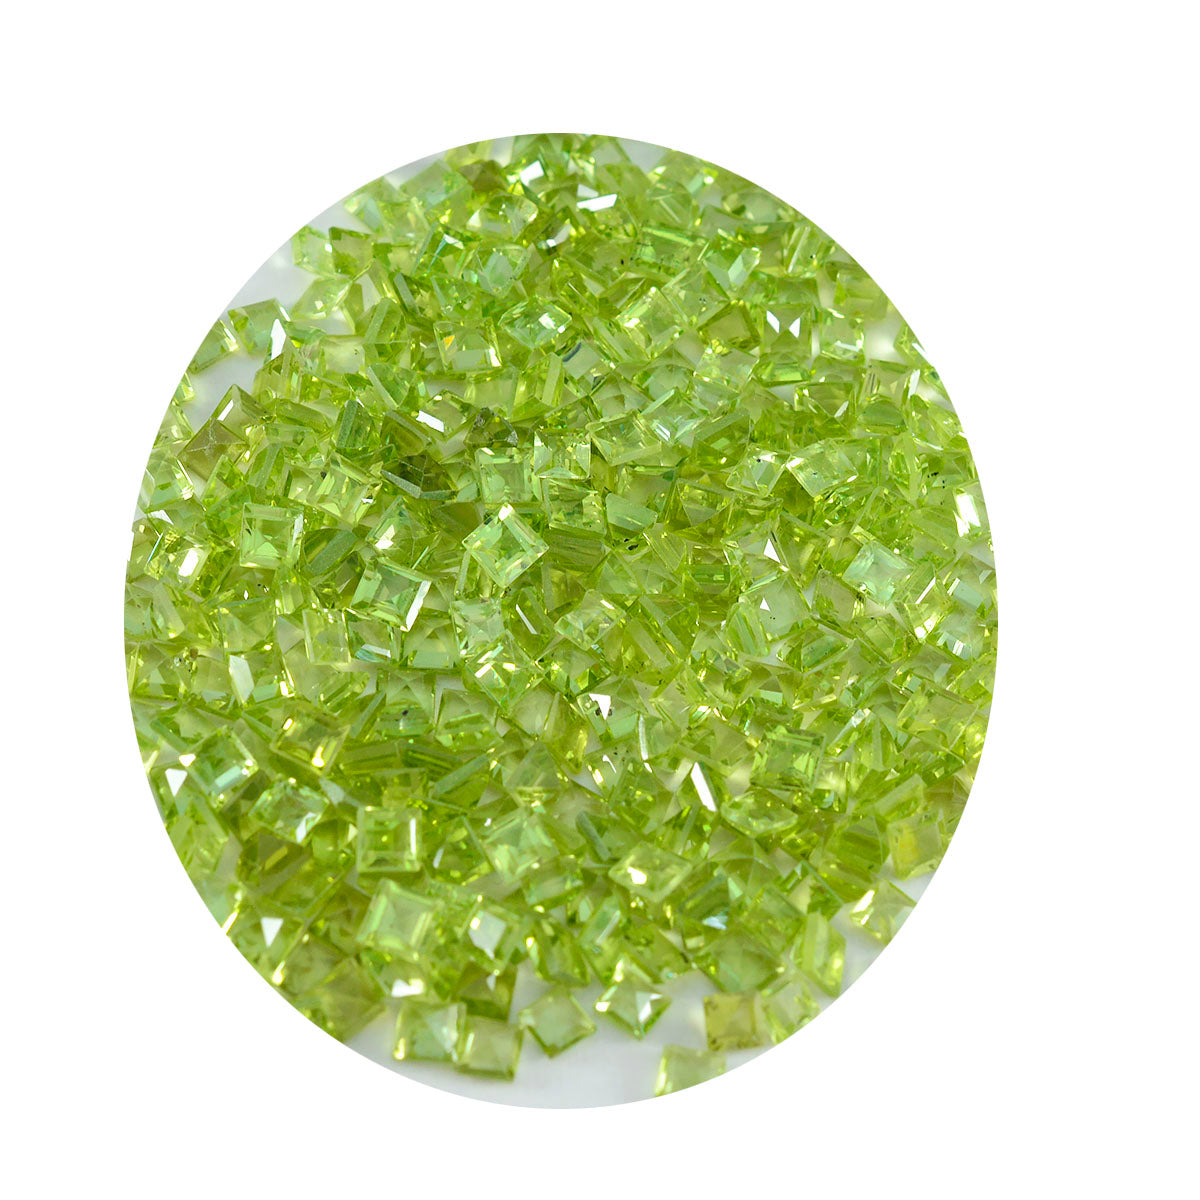 Riyogems 1 Stück natürlicher grüner Peridot, facettiert, 4 x 4 mm, quadratische Form, gut aussehender, hochwertiger loser Stein